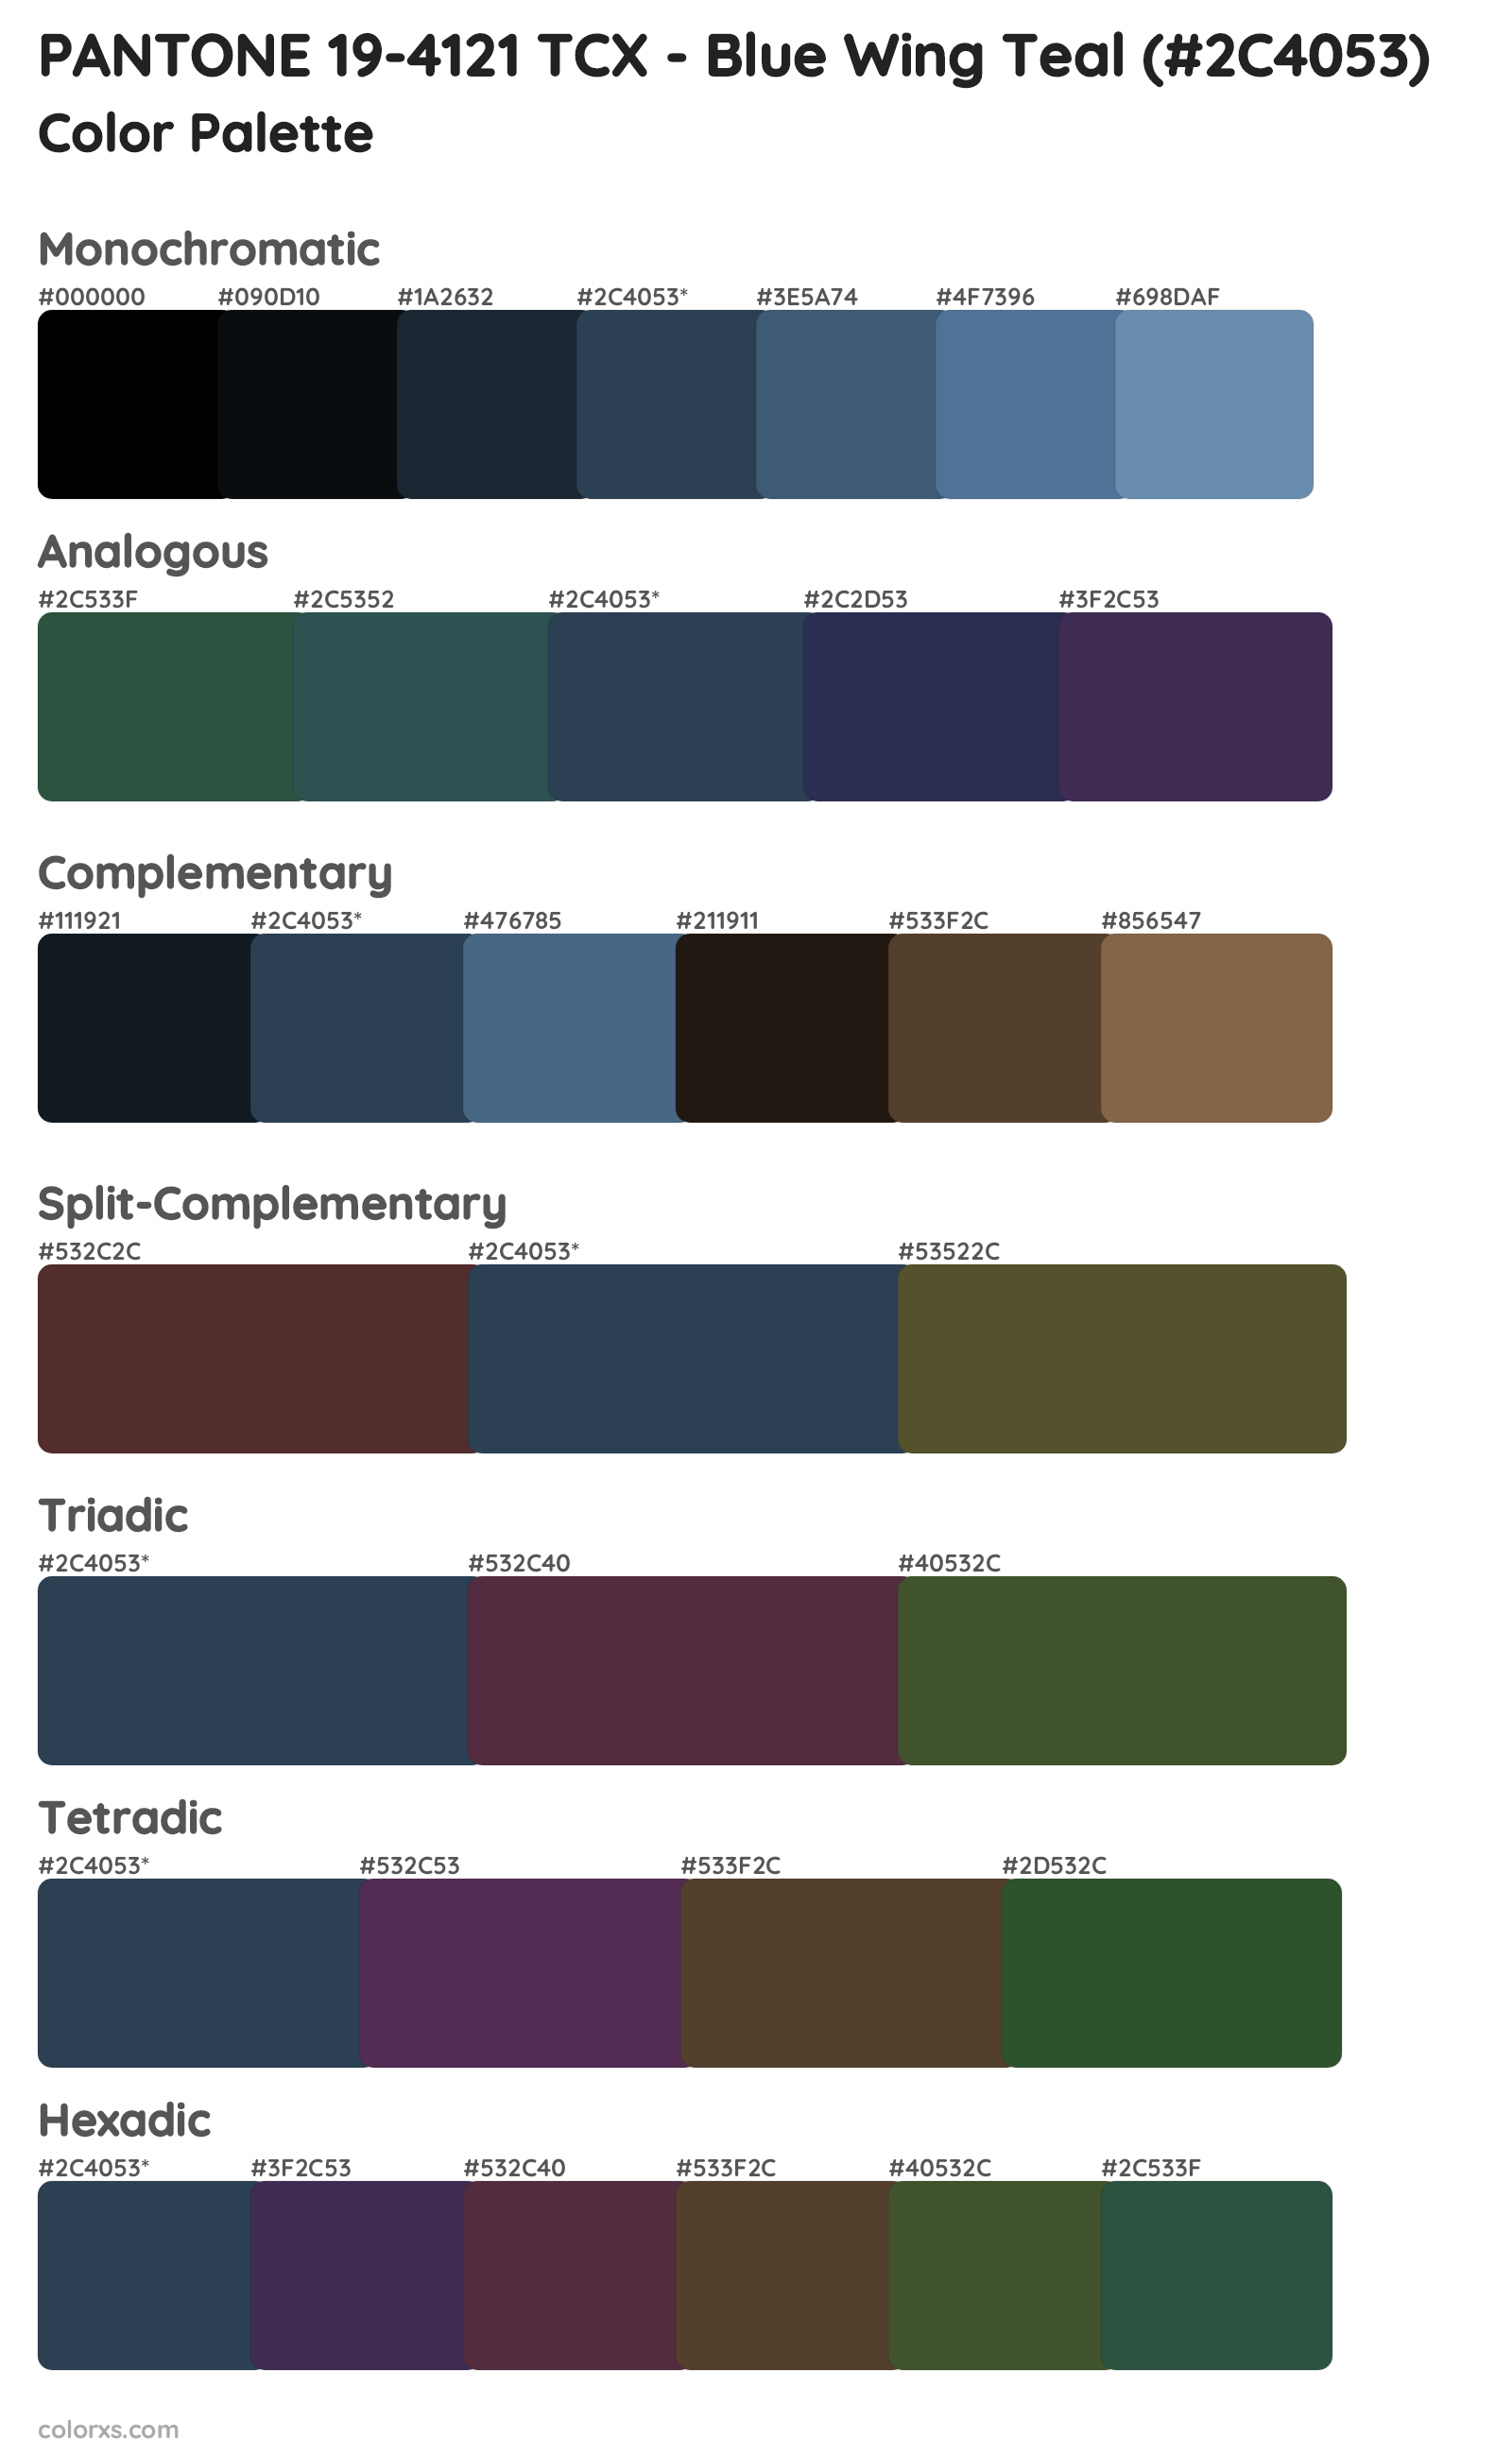 PANTONE 19-4121 TCX - Blue Wing Teal Color Scheme Palettes